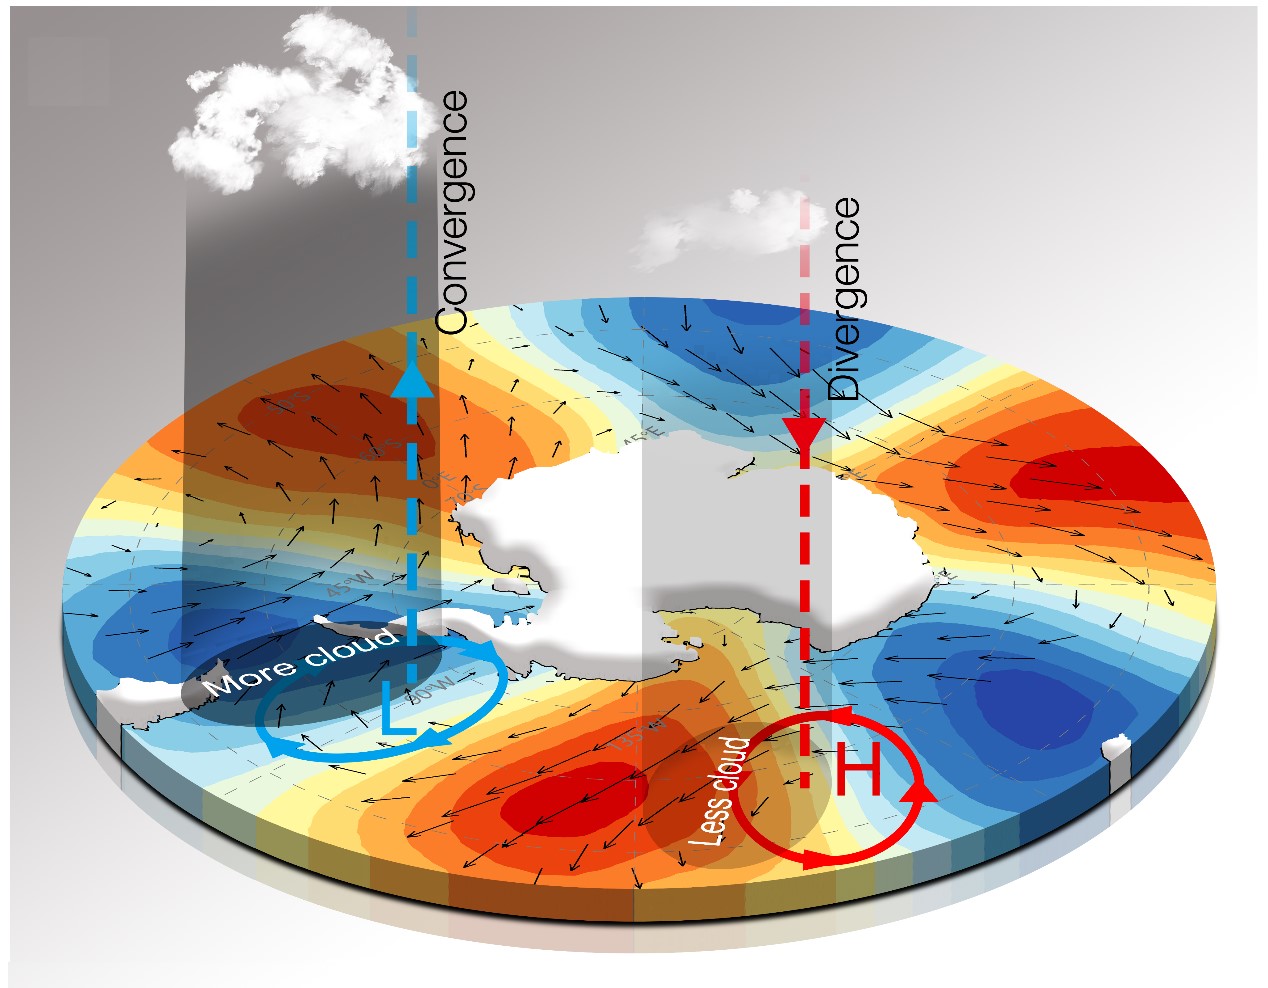 海洋表层水温年内变化图 - 至作课件云平台